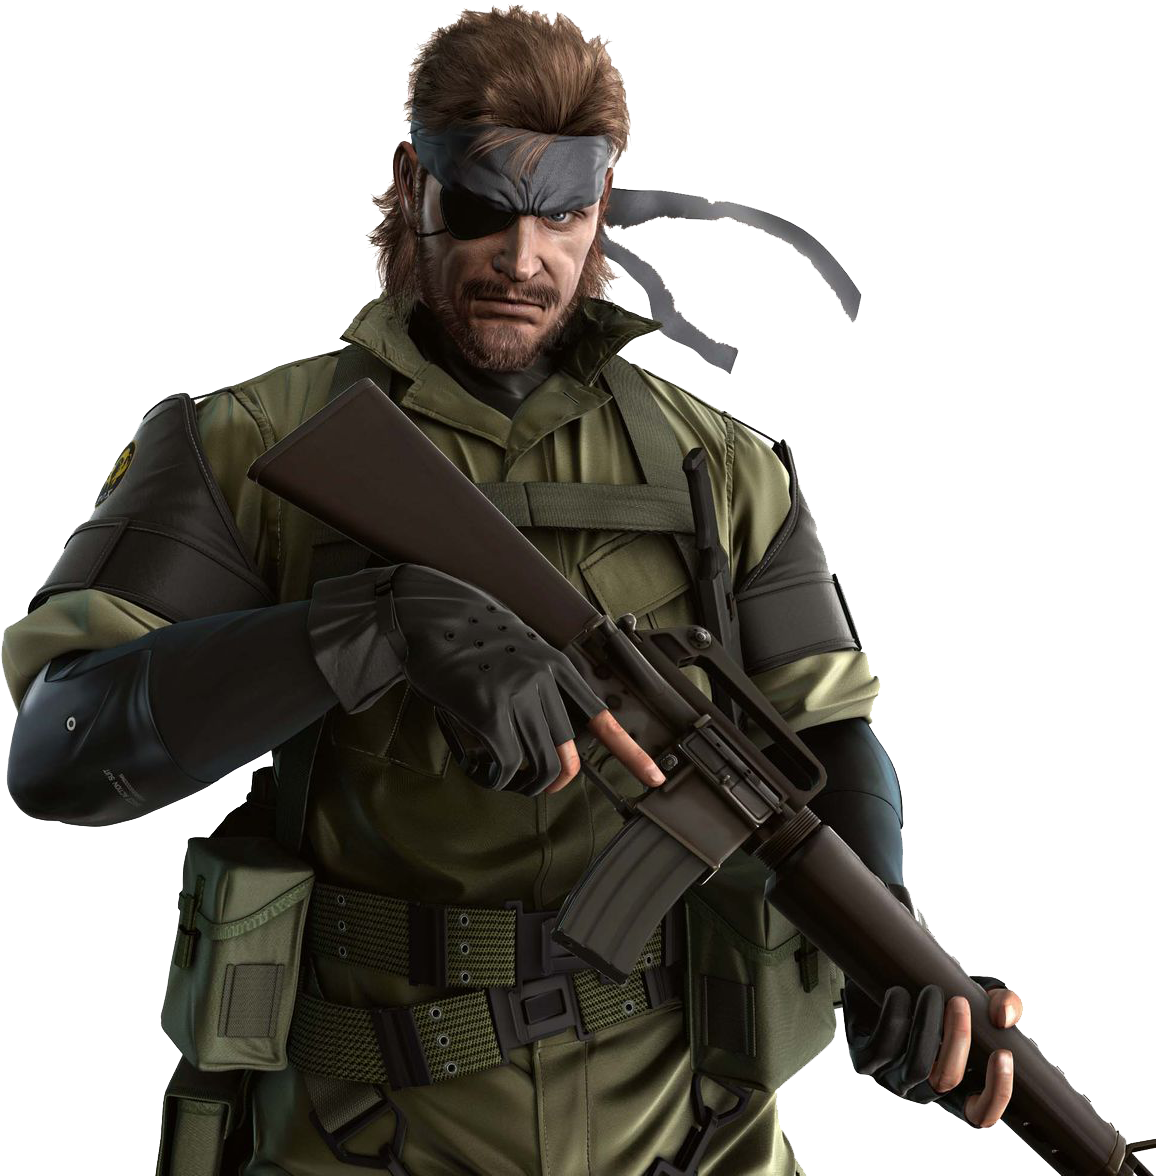 Big Metal Gear Photos Boss PNG Image